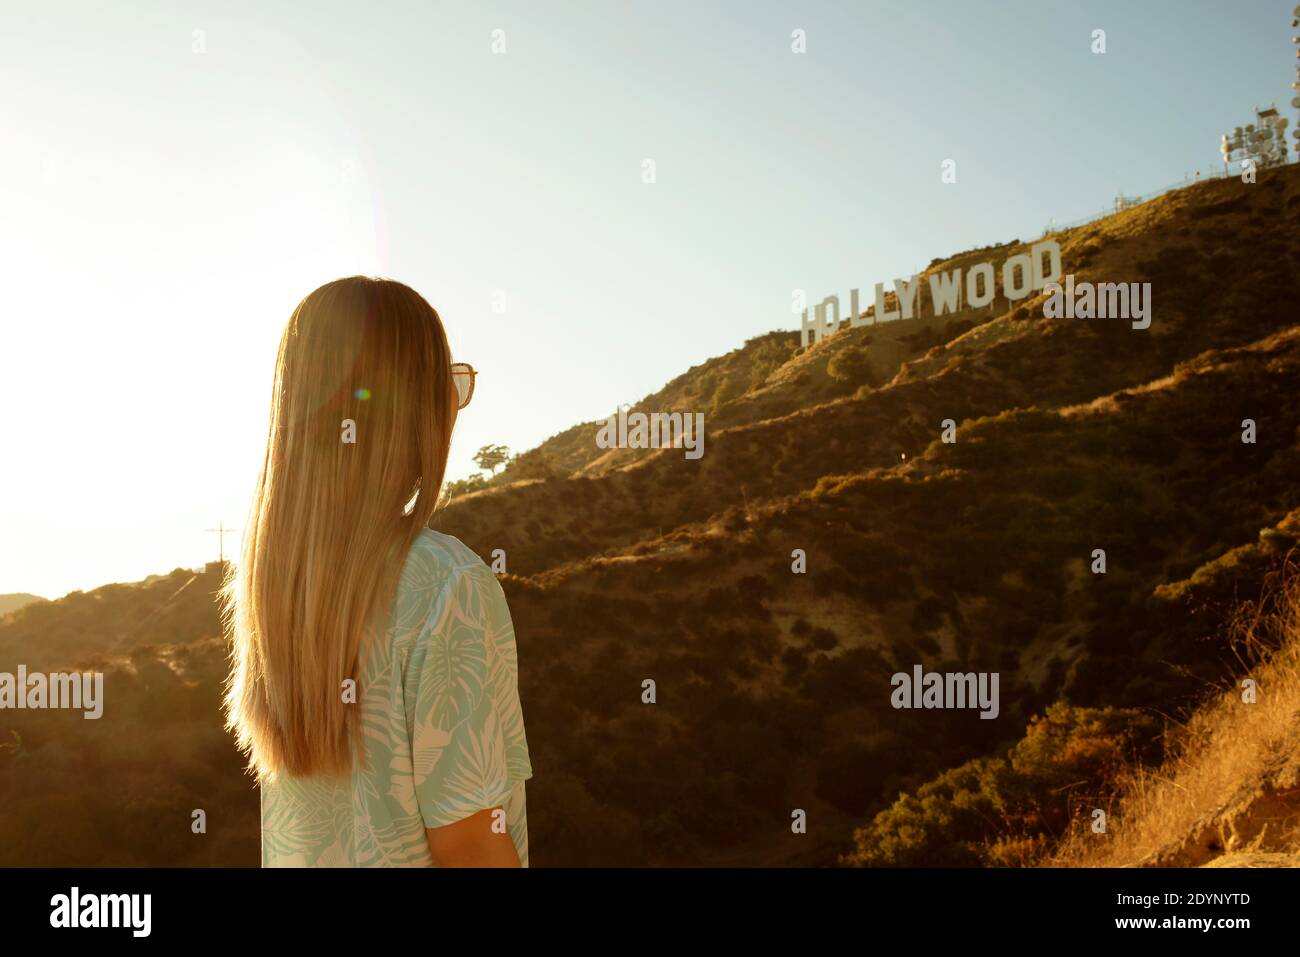 Vista trasera de una chica mirando el cartel de Hollywood, los Ángeles, California, Estados Unidos. Ago 2019 Foto de stock